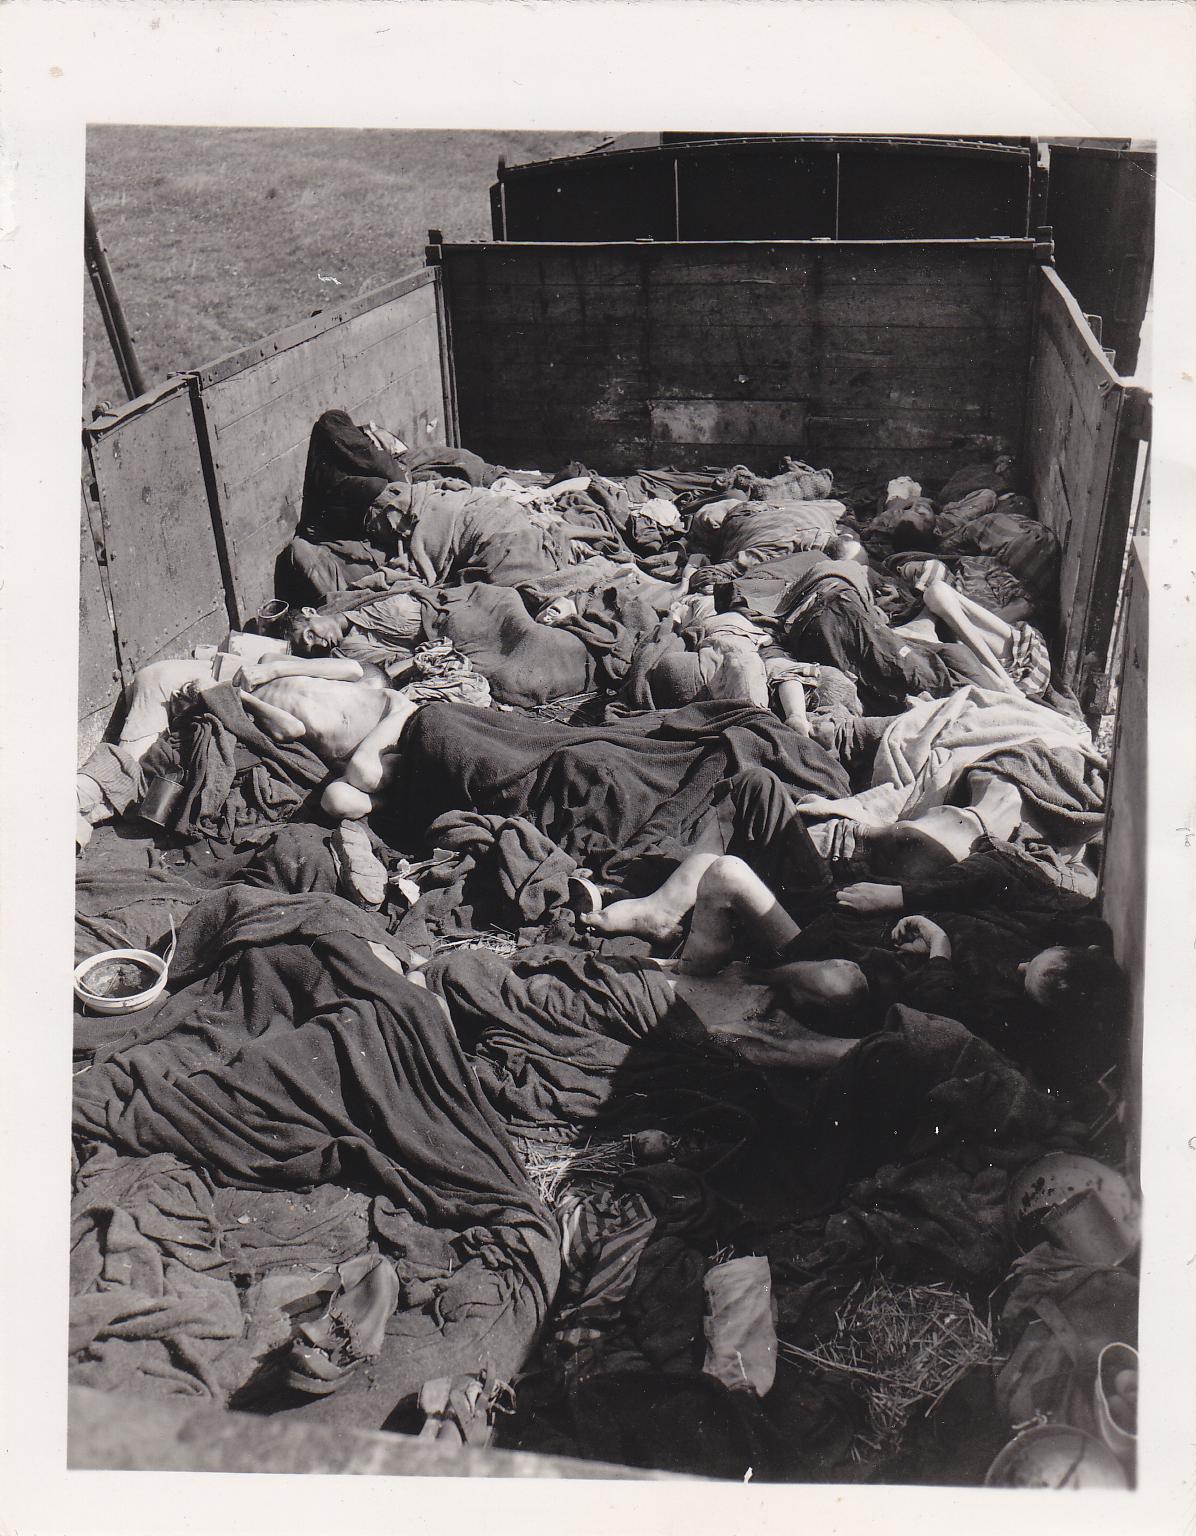 Dachau, 29/30 aprile 1945: cadaveri trovati dai soldati americani nel “treno della morte”